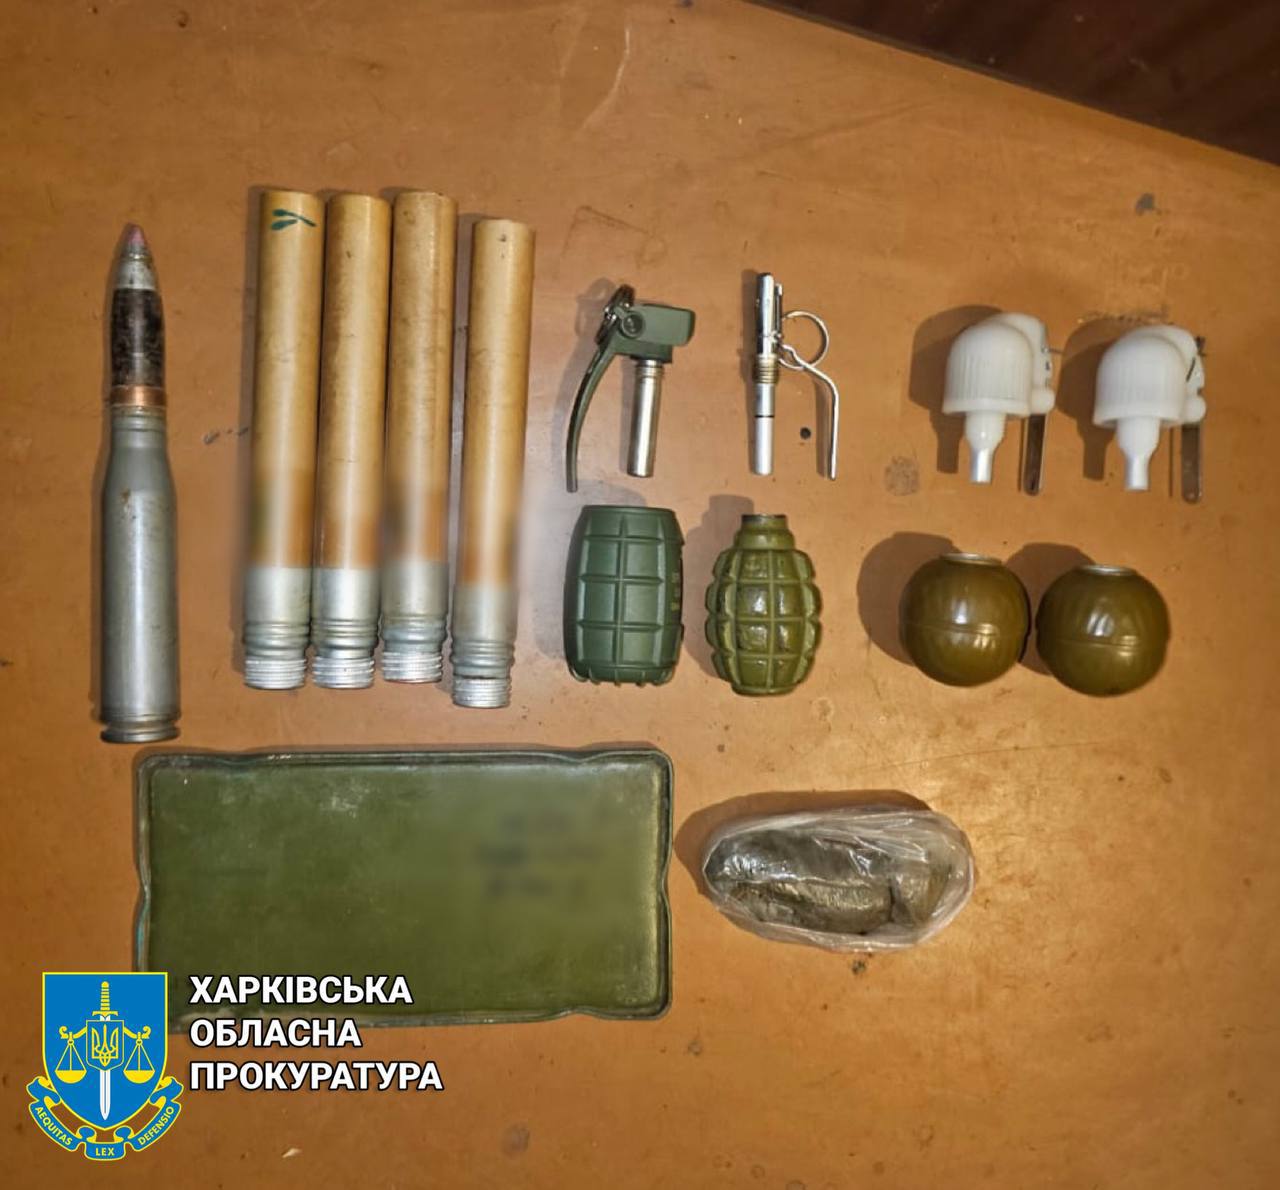 Харьковчанина, бросившего гранату в соседа, будут судить